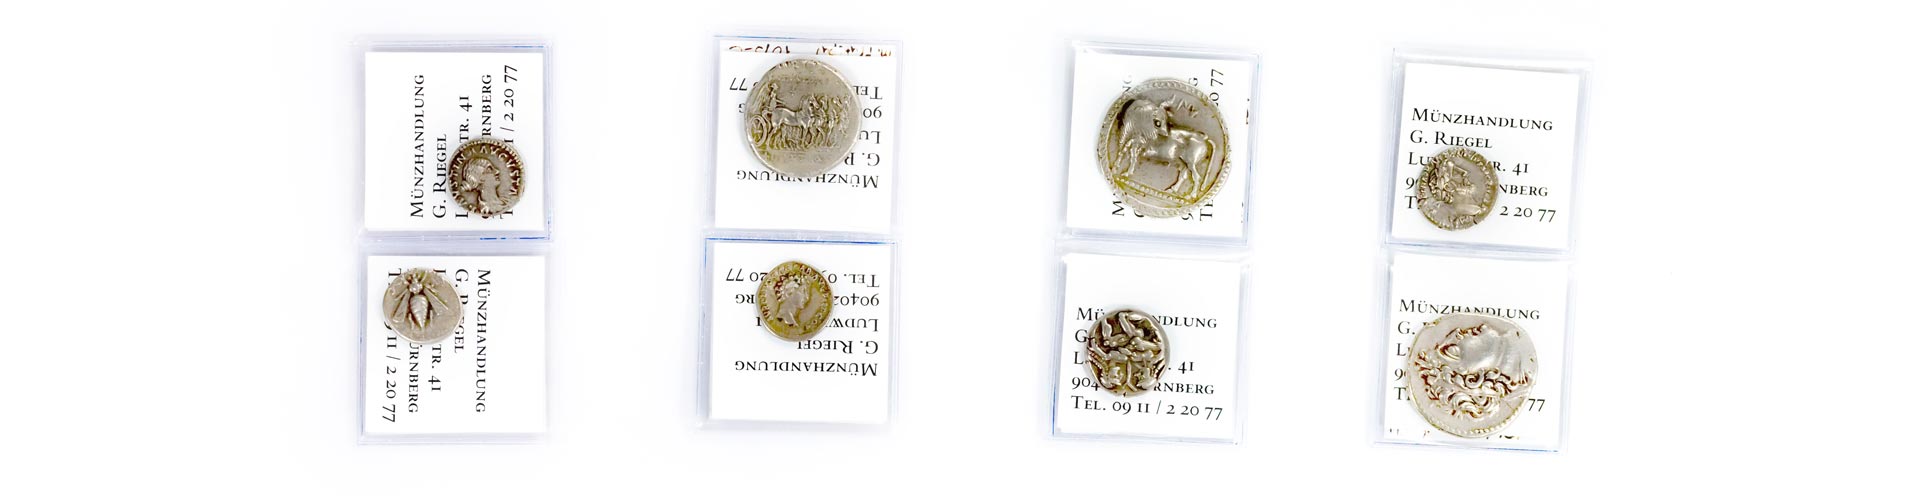 Sammlermünzen aus Silber